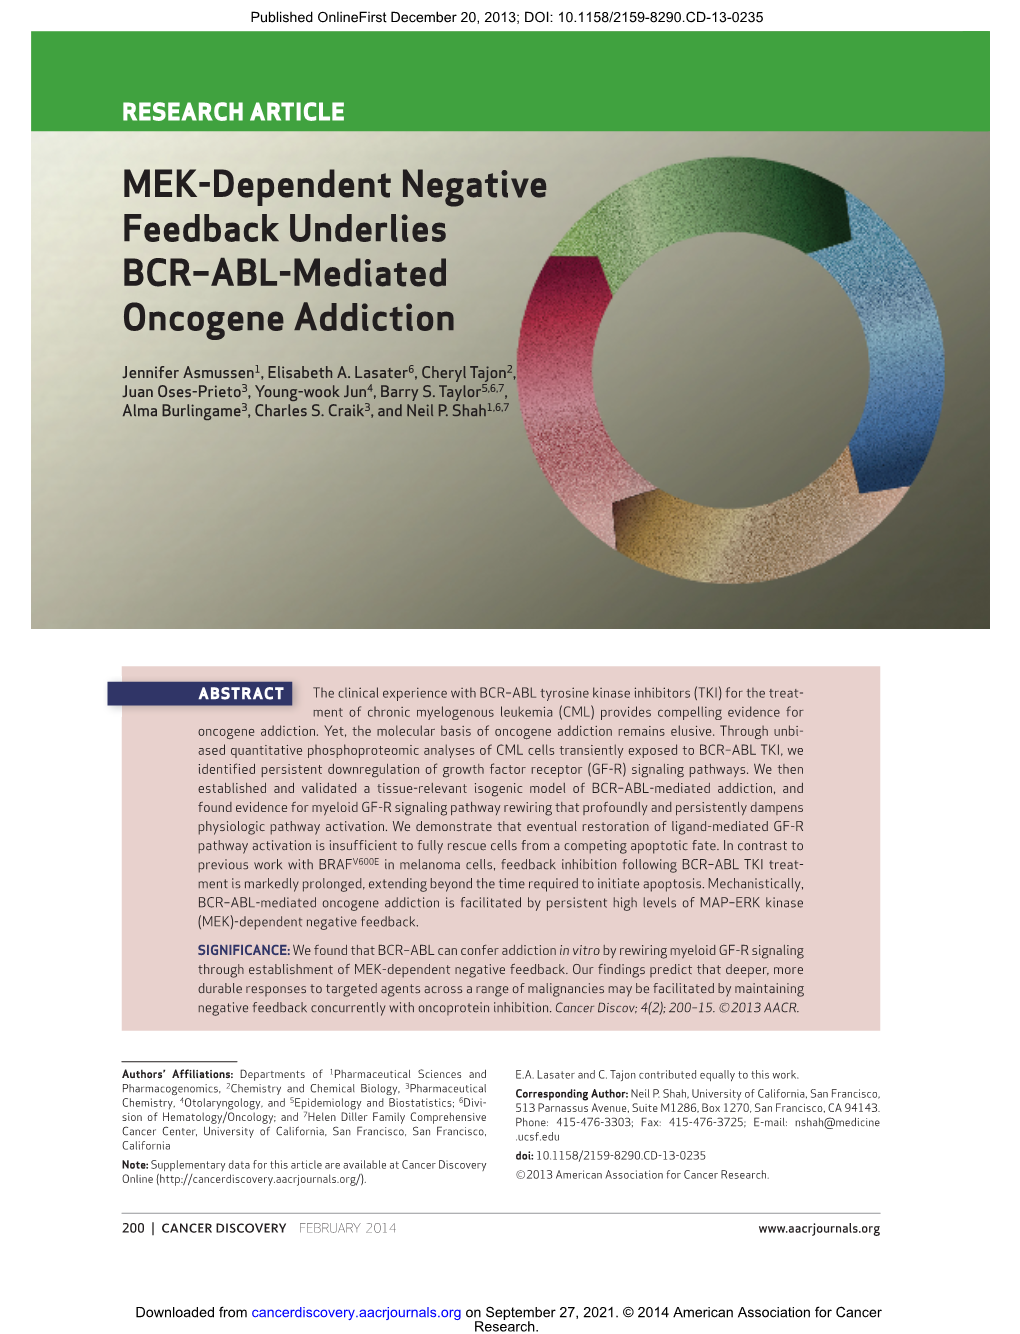 MEK-Dependent Negative Feedback Underlies BCR–ABL-Mediated Oncogene Addiction